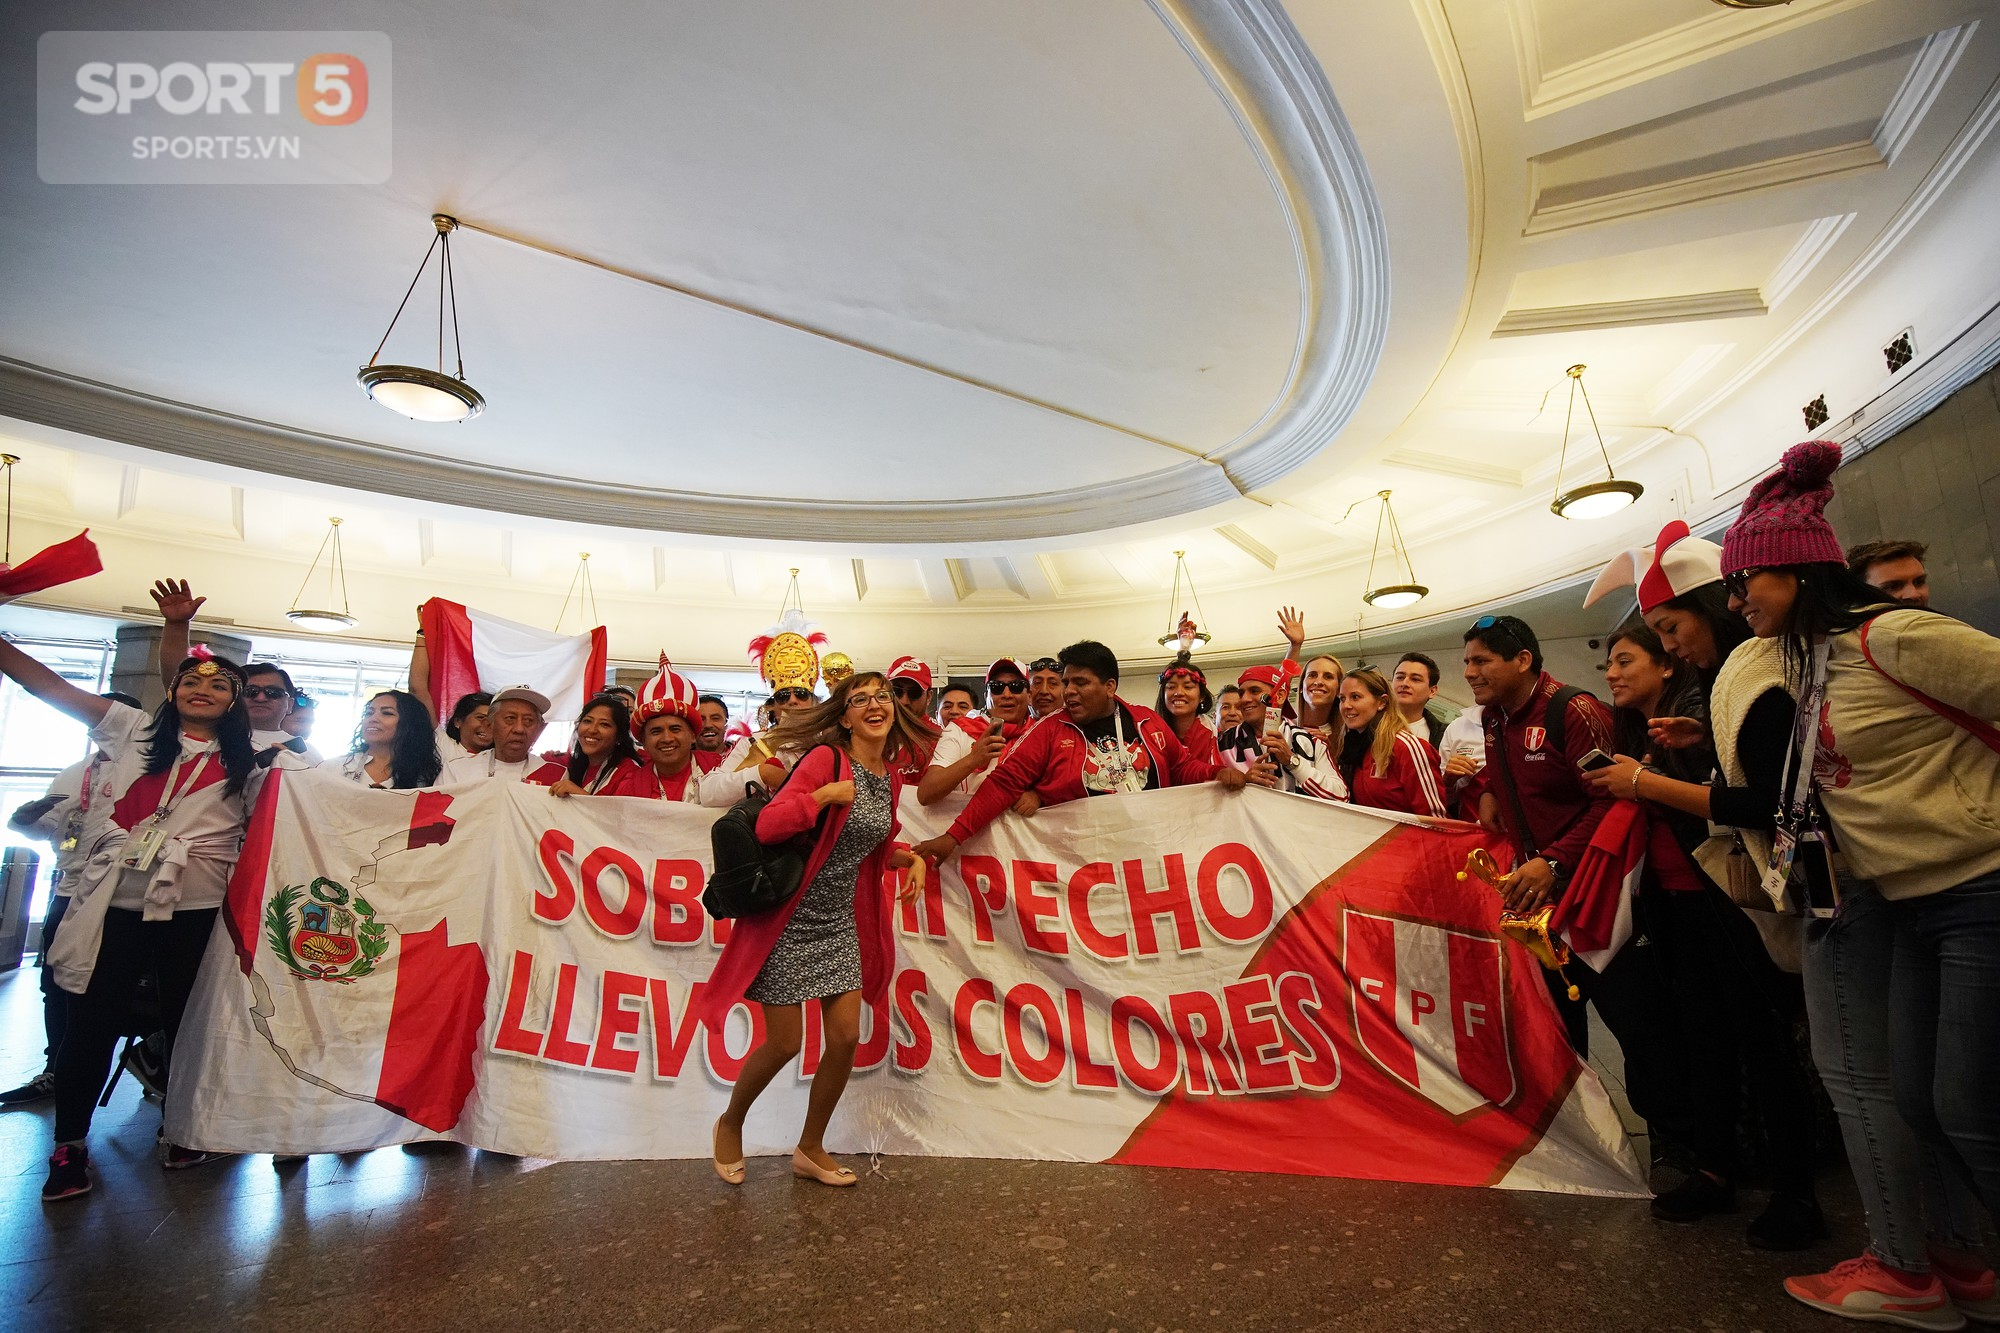 Tình yêu bóng đá của người Peru và câu chuyện vờ tăng cân để mua vé World Cup - Ảnh 1.